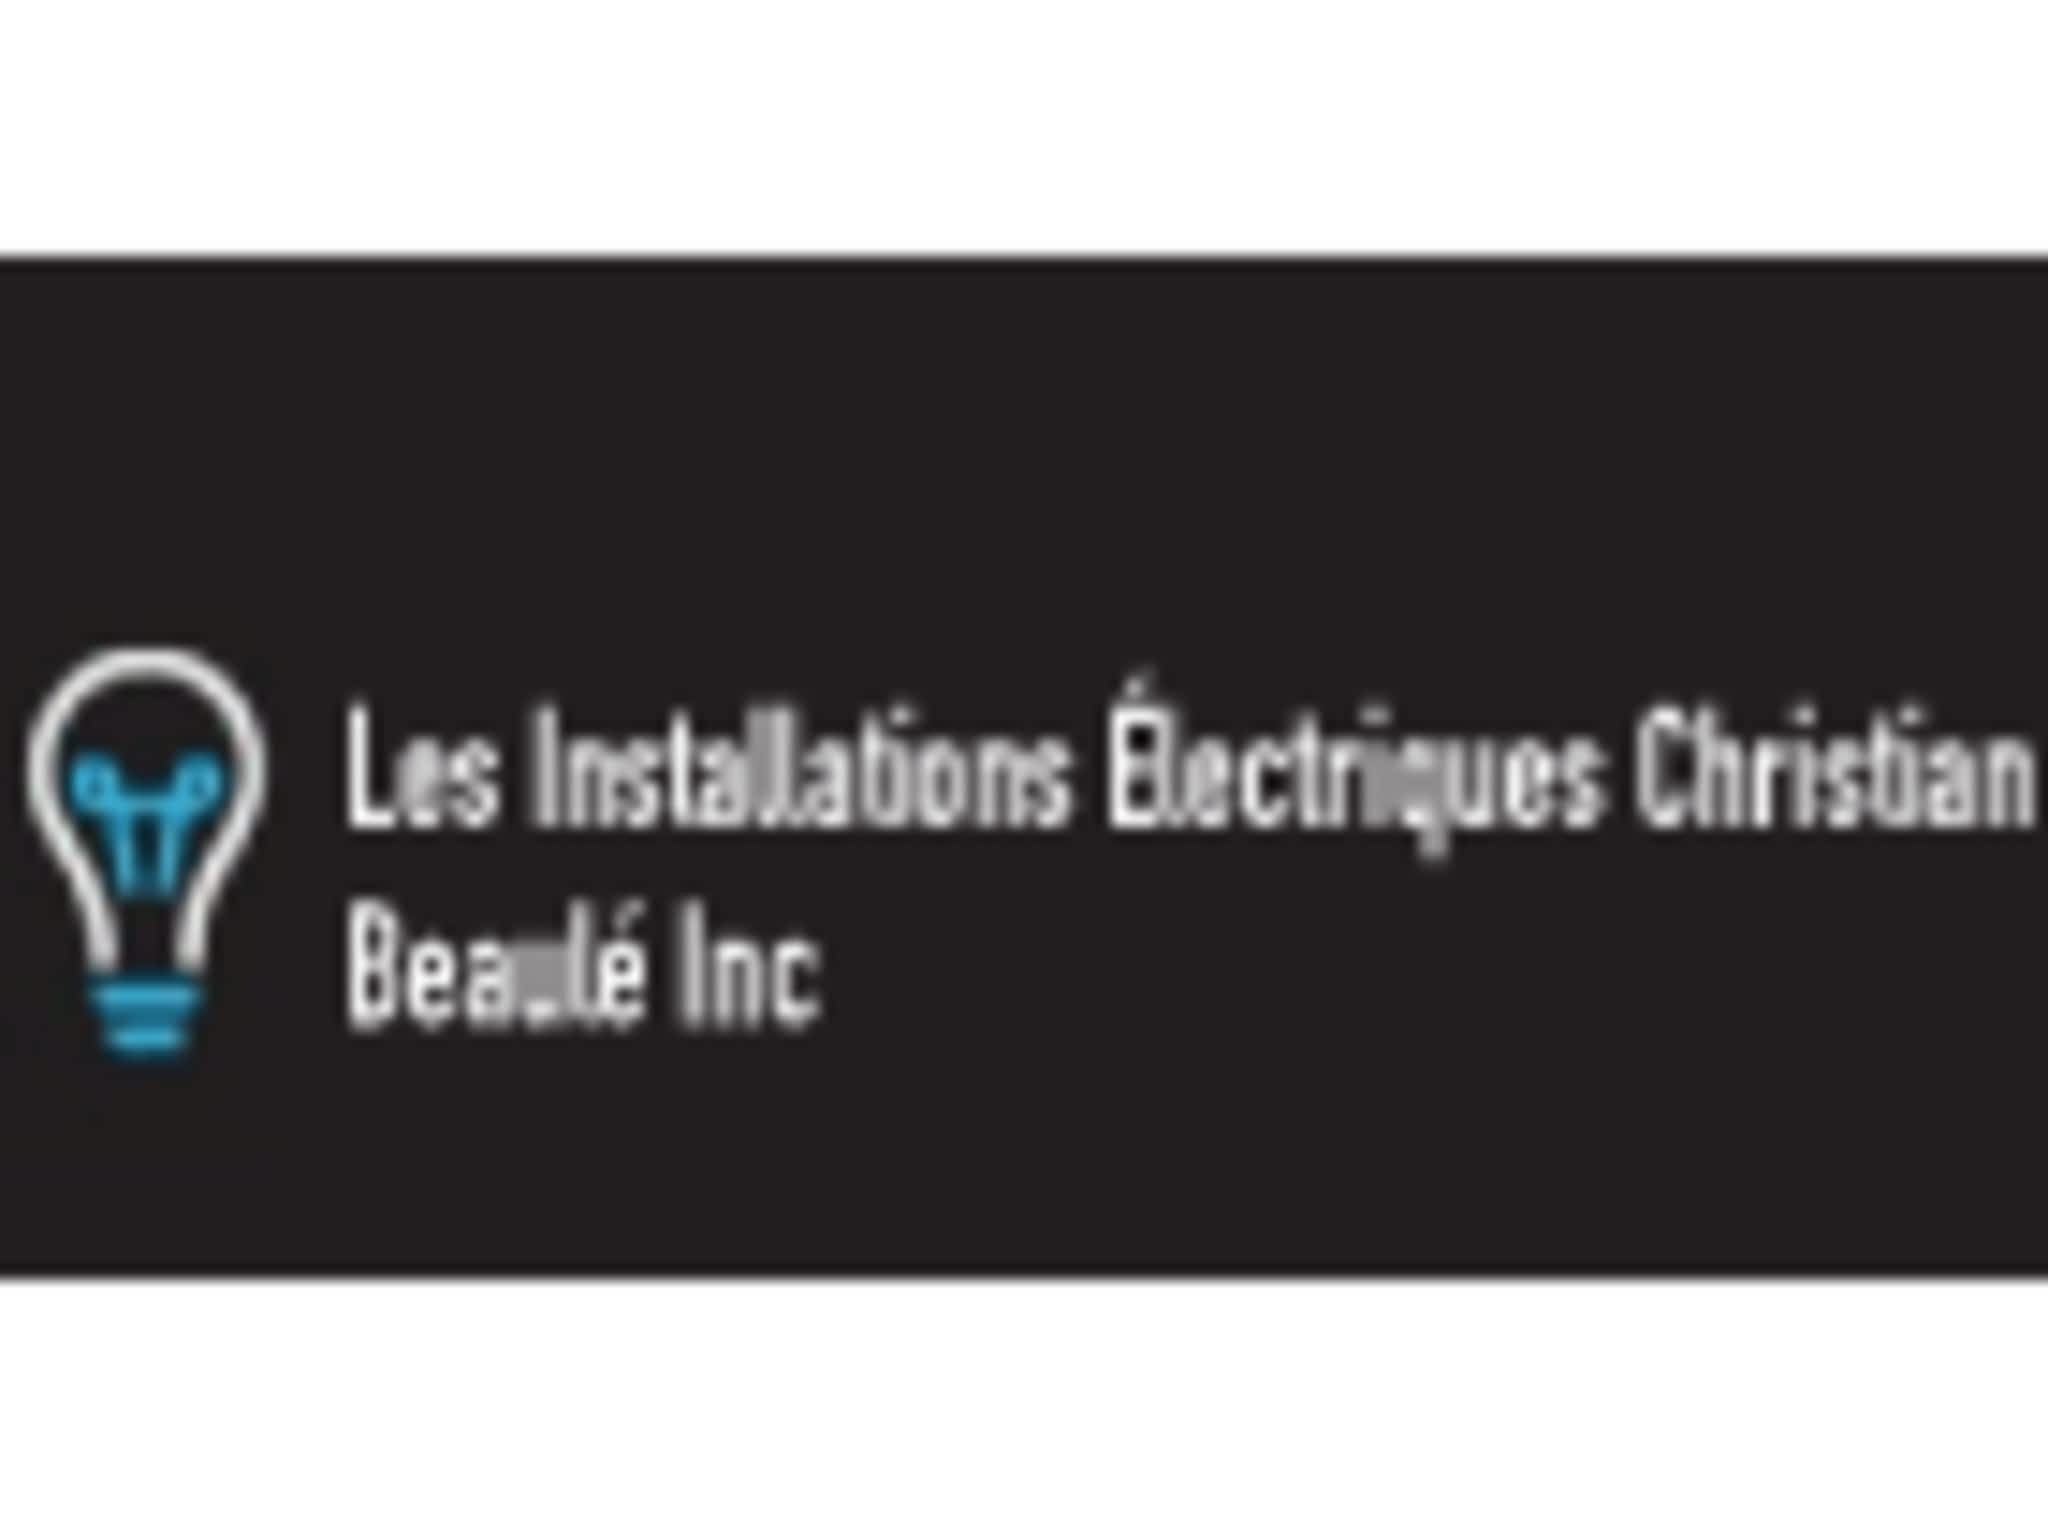 photo Les Installations Électriques Christian Beaulé Inc